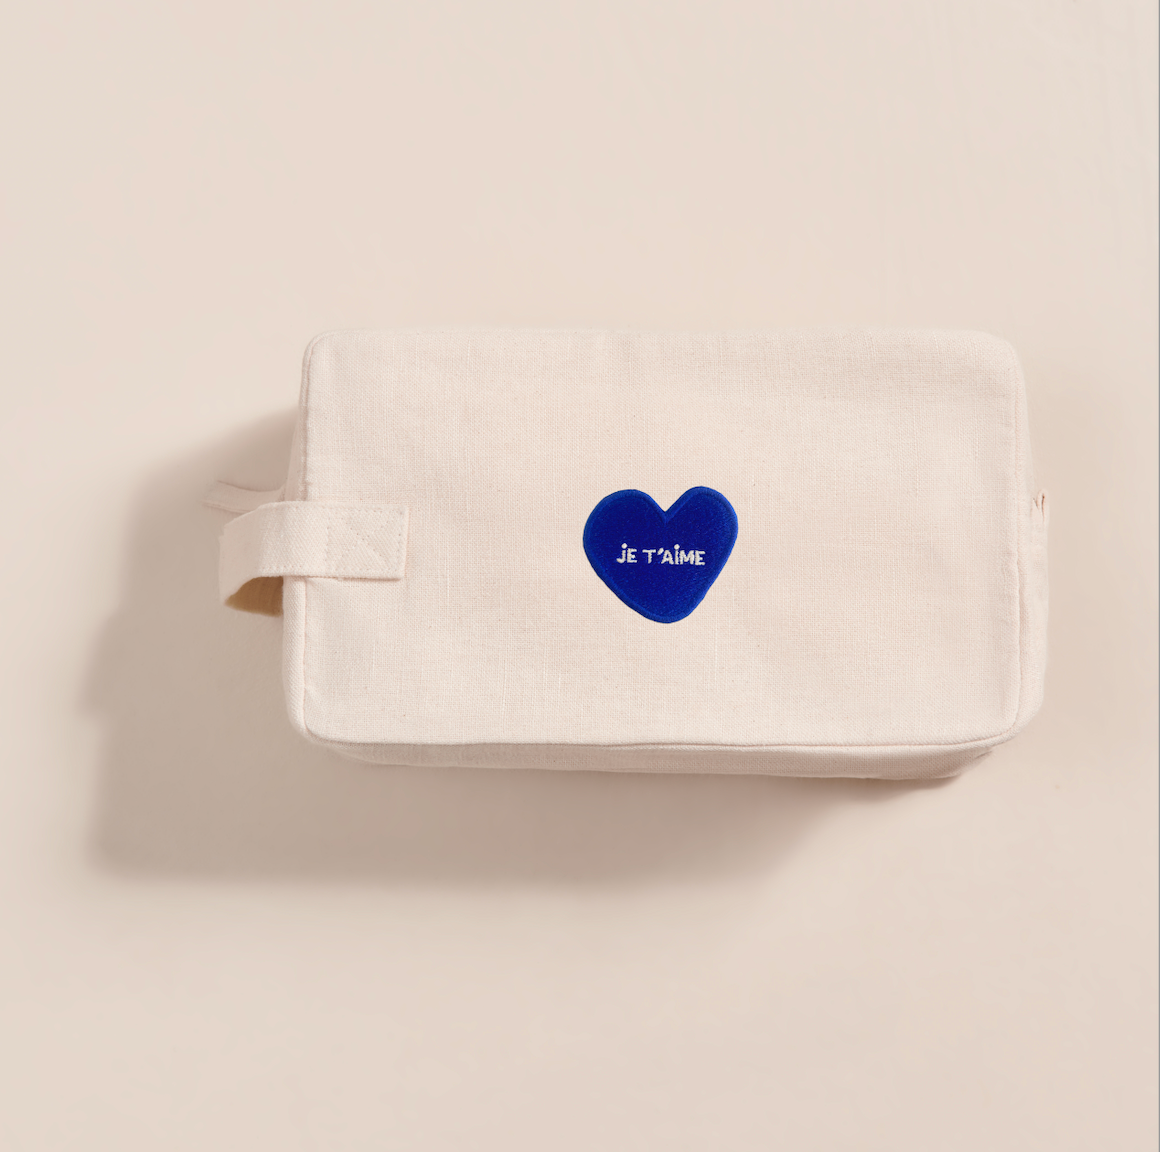 La trousse de toilette émoi émoi est décoré d'un coeur bleu brodé sur lequel est écrit Je t'aime